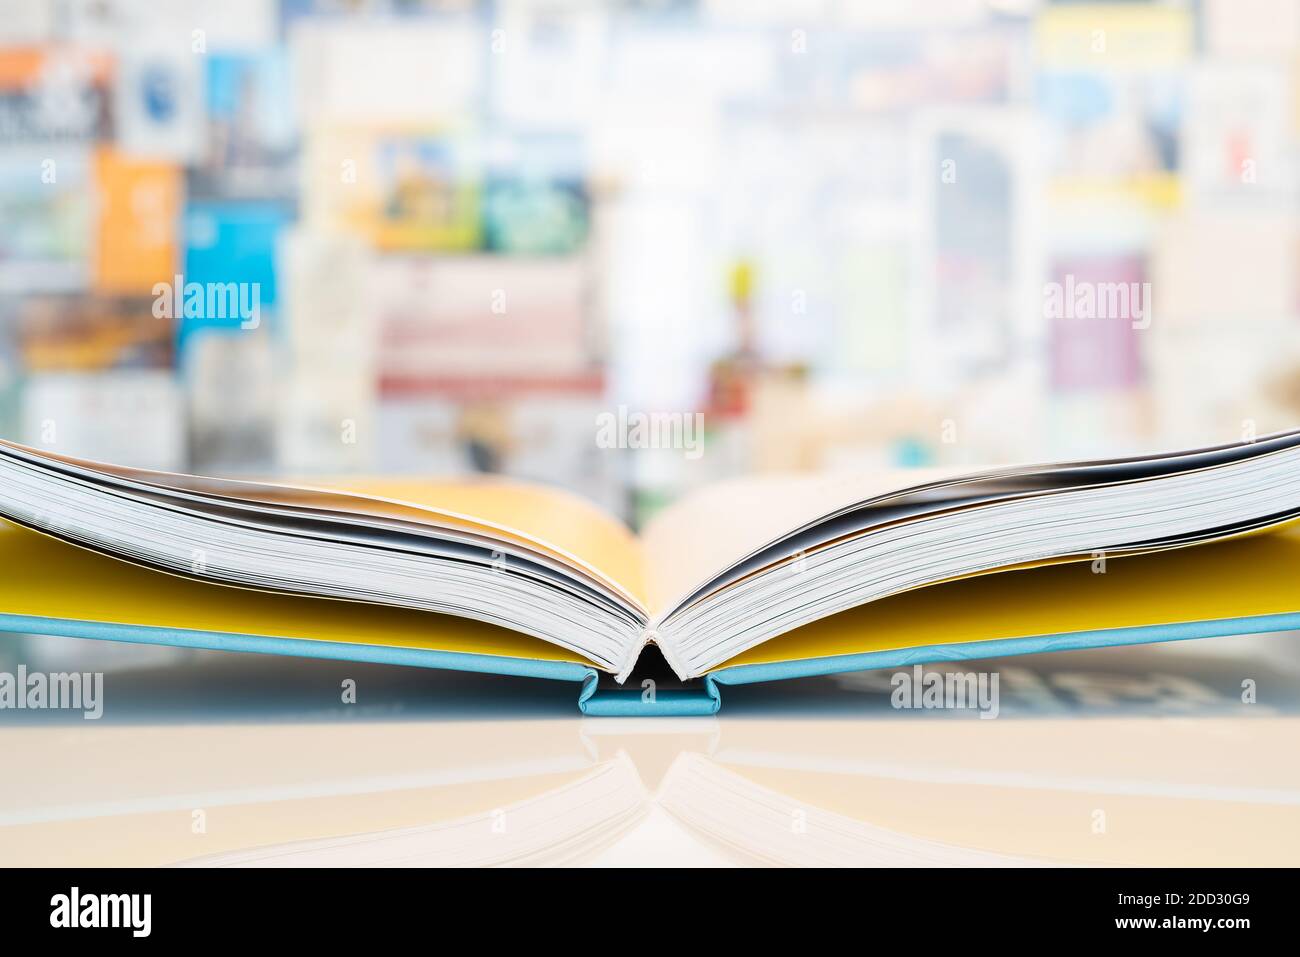 Un livre ouvert avec un arrière-plan flou pastel Banque D'Images